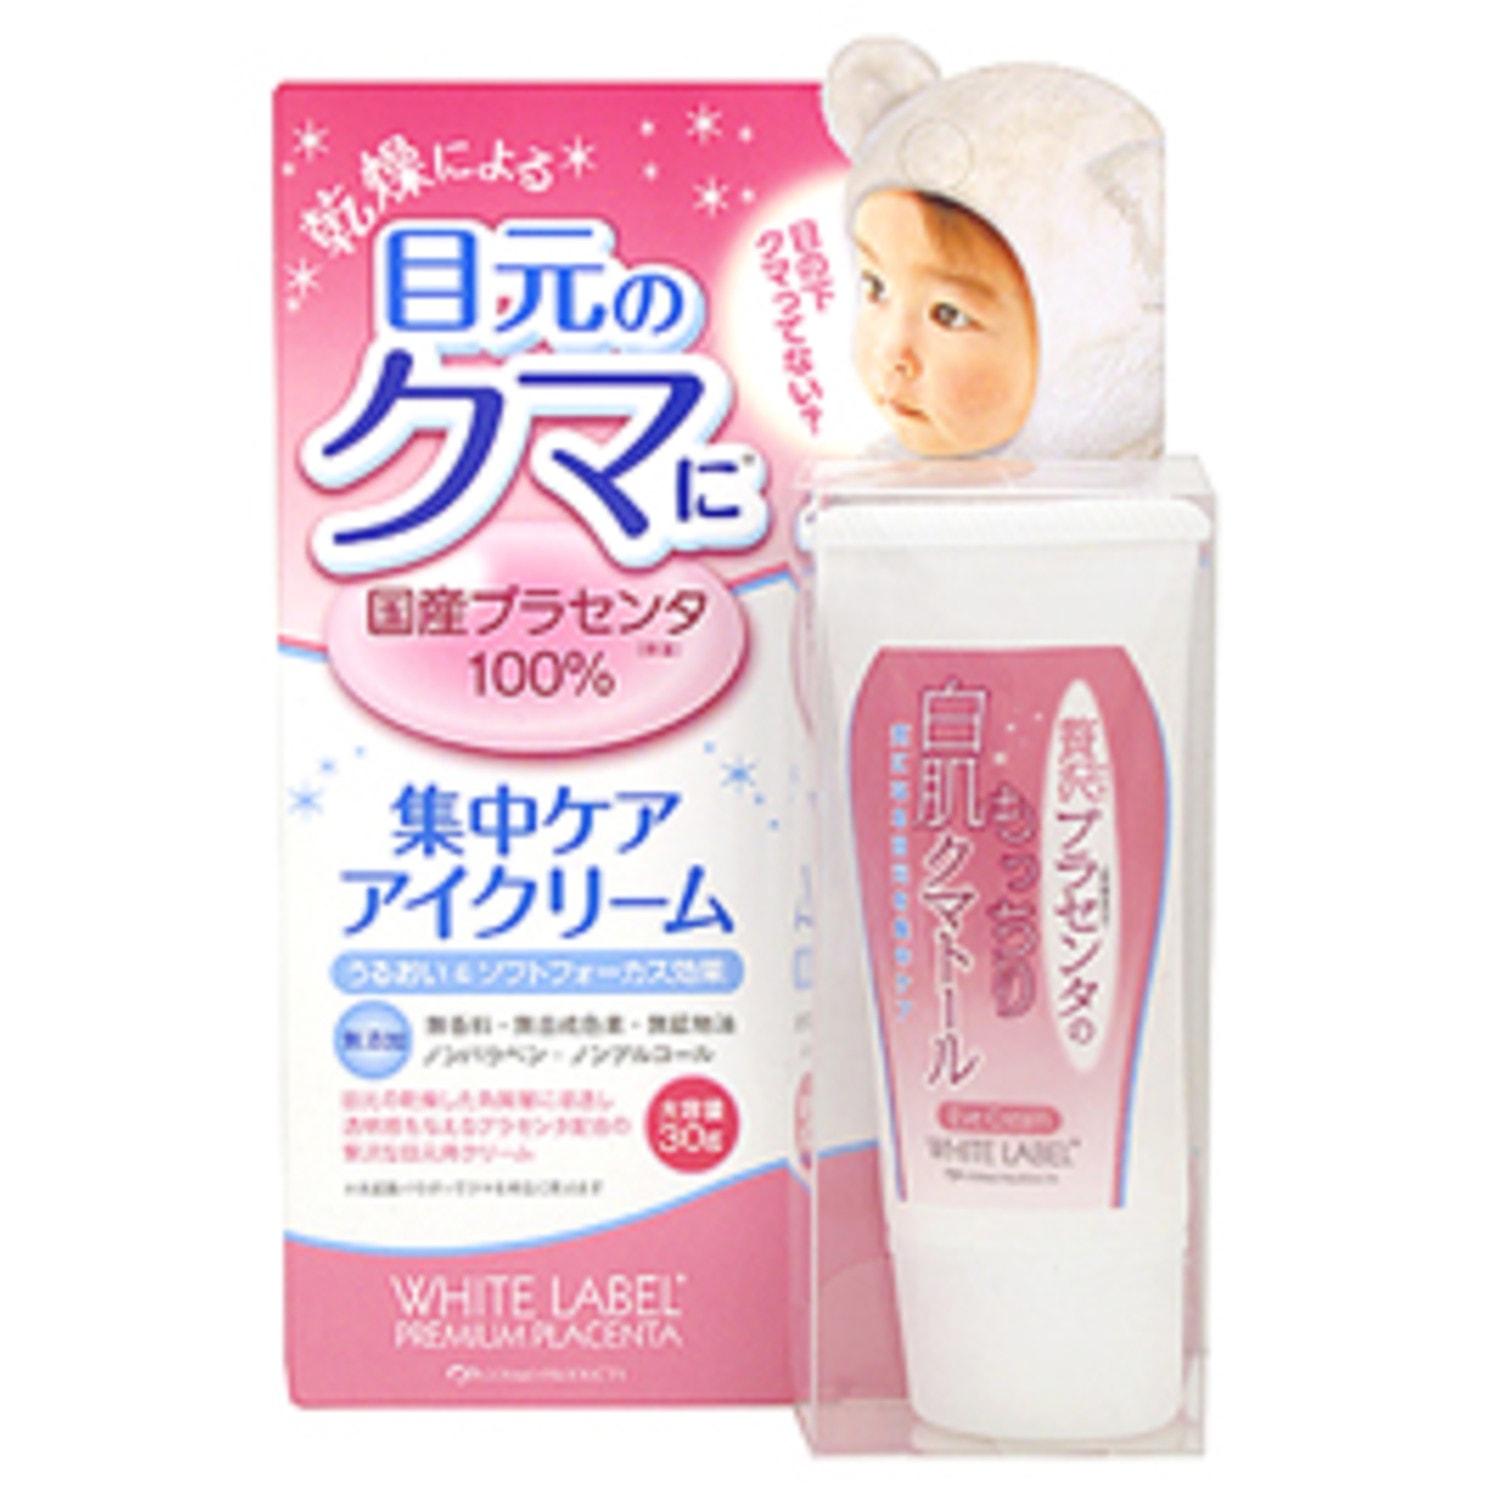 Miccosmo « White Label Premium Placenta Essence Eye Cream» Увлажняющий и подтягивающий крем с плацентой для ухода за кожей вокруг глаз с экстрактом плаценты 30г. / 624809